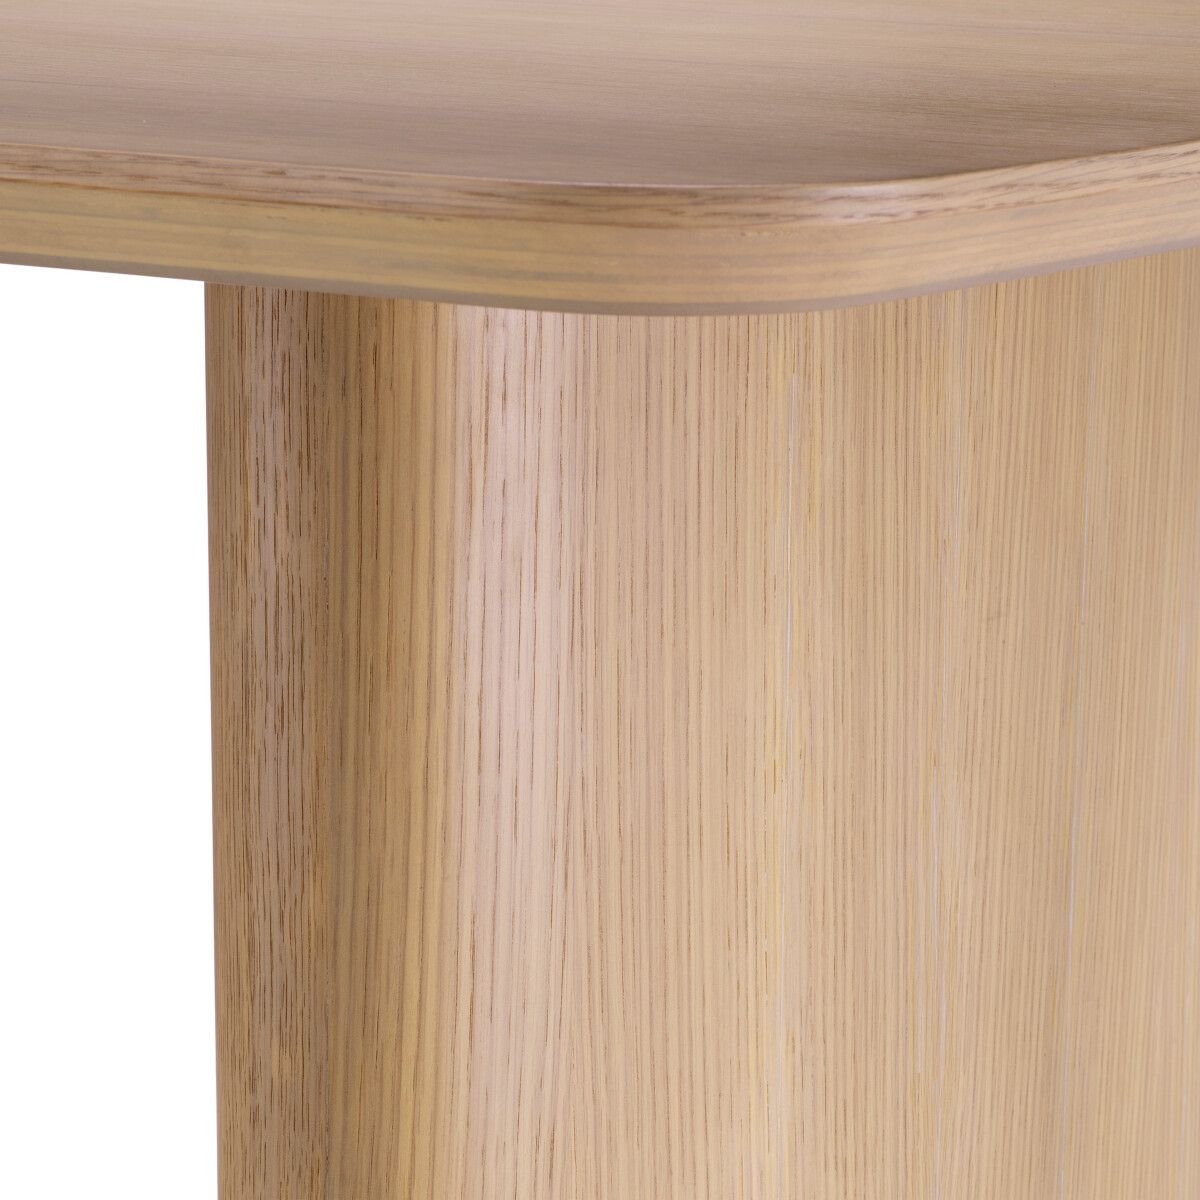 Bergman dining table natural oak veneer